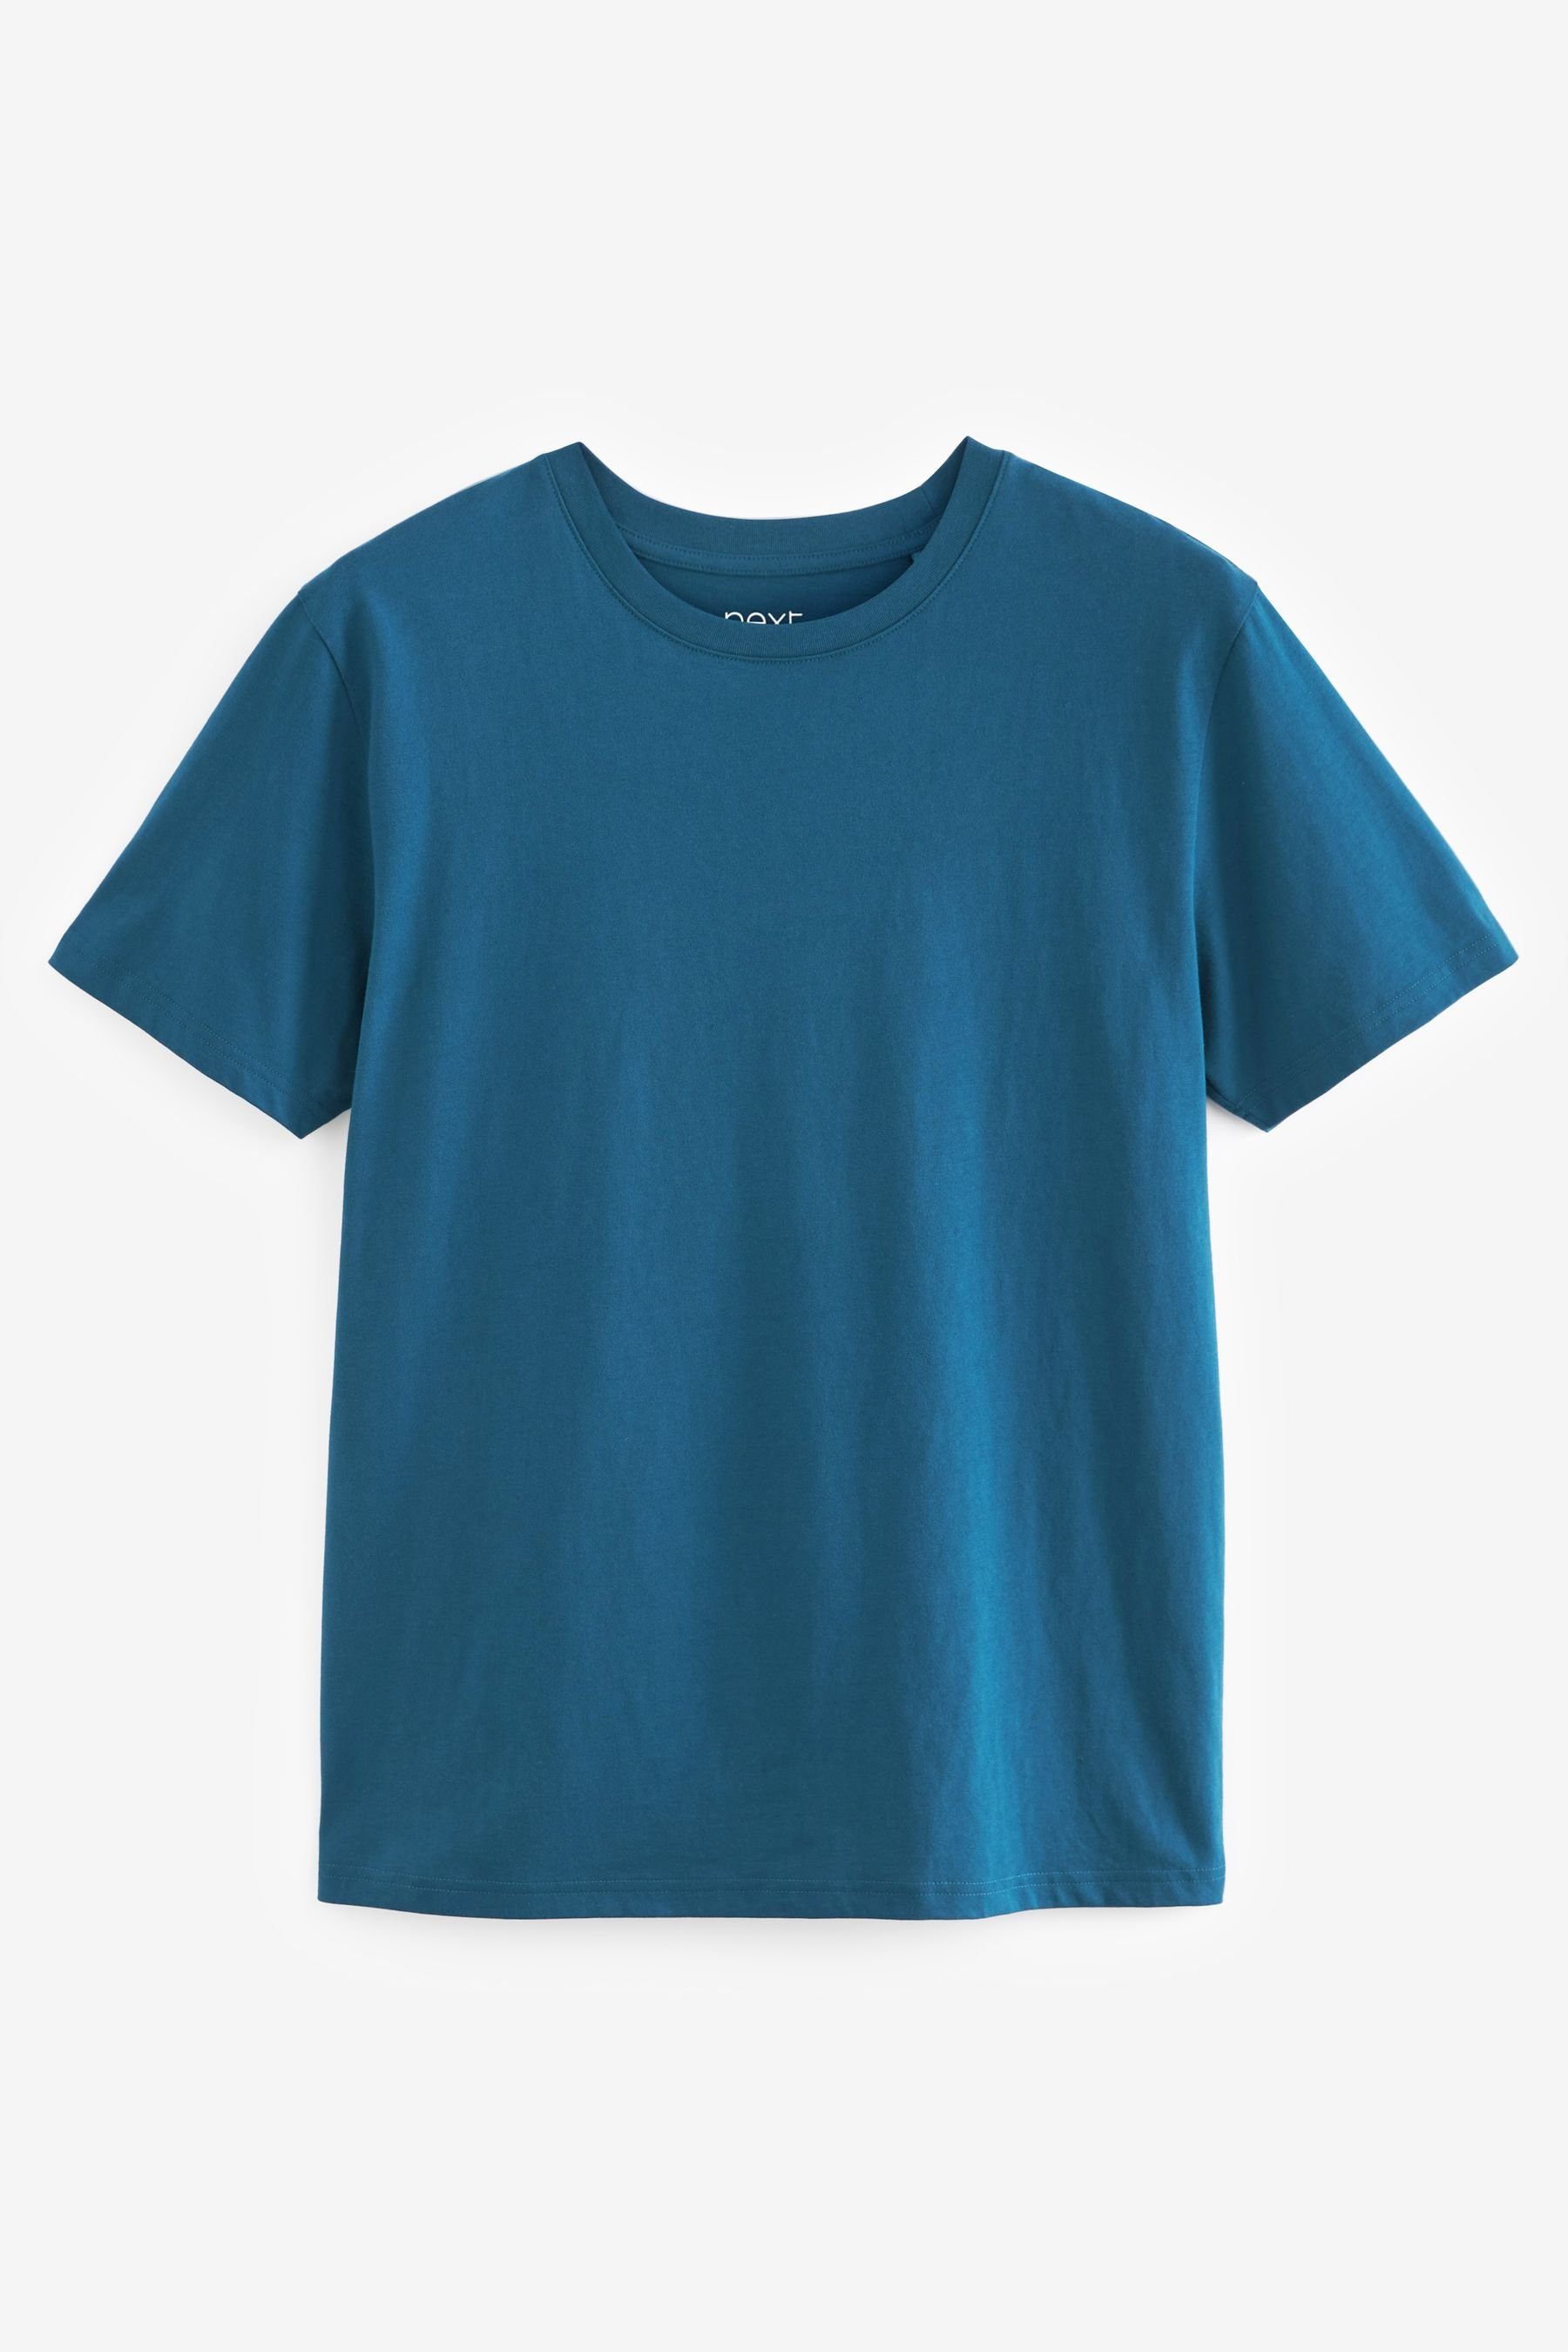 6er-Pack Colour (6-tlg) Rich T-Shirts T-Shirt Next Mix